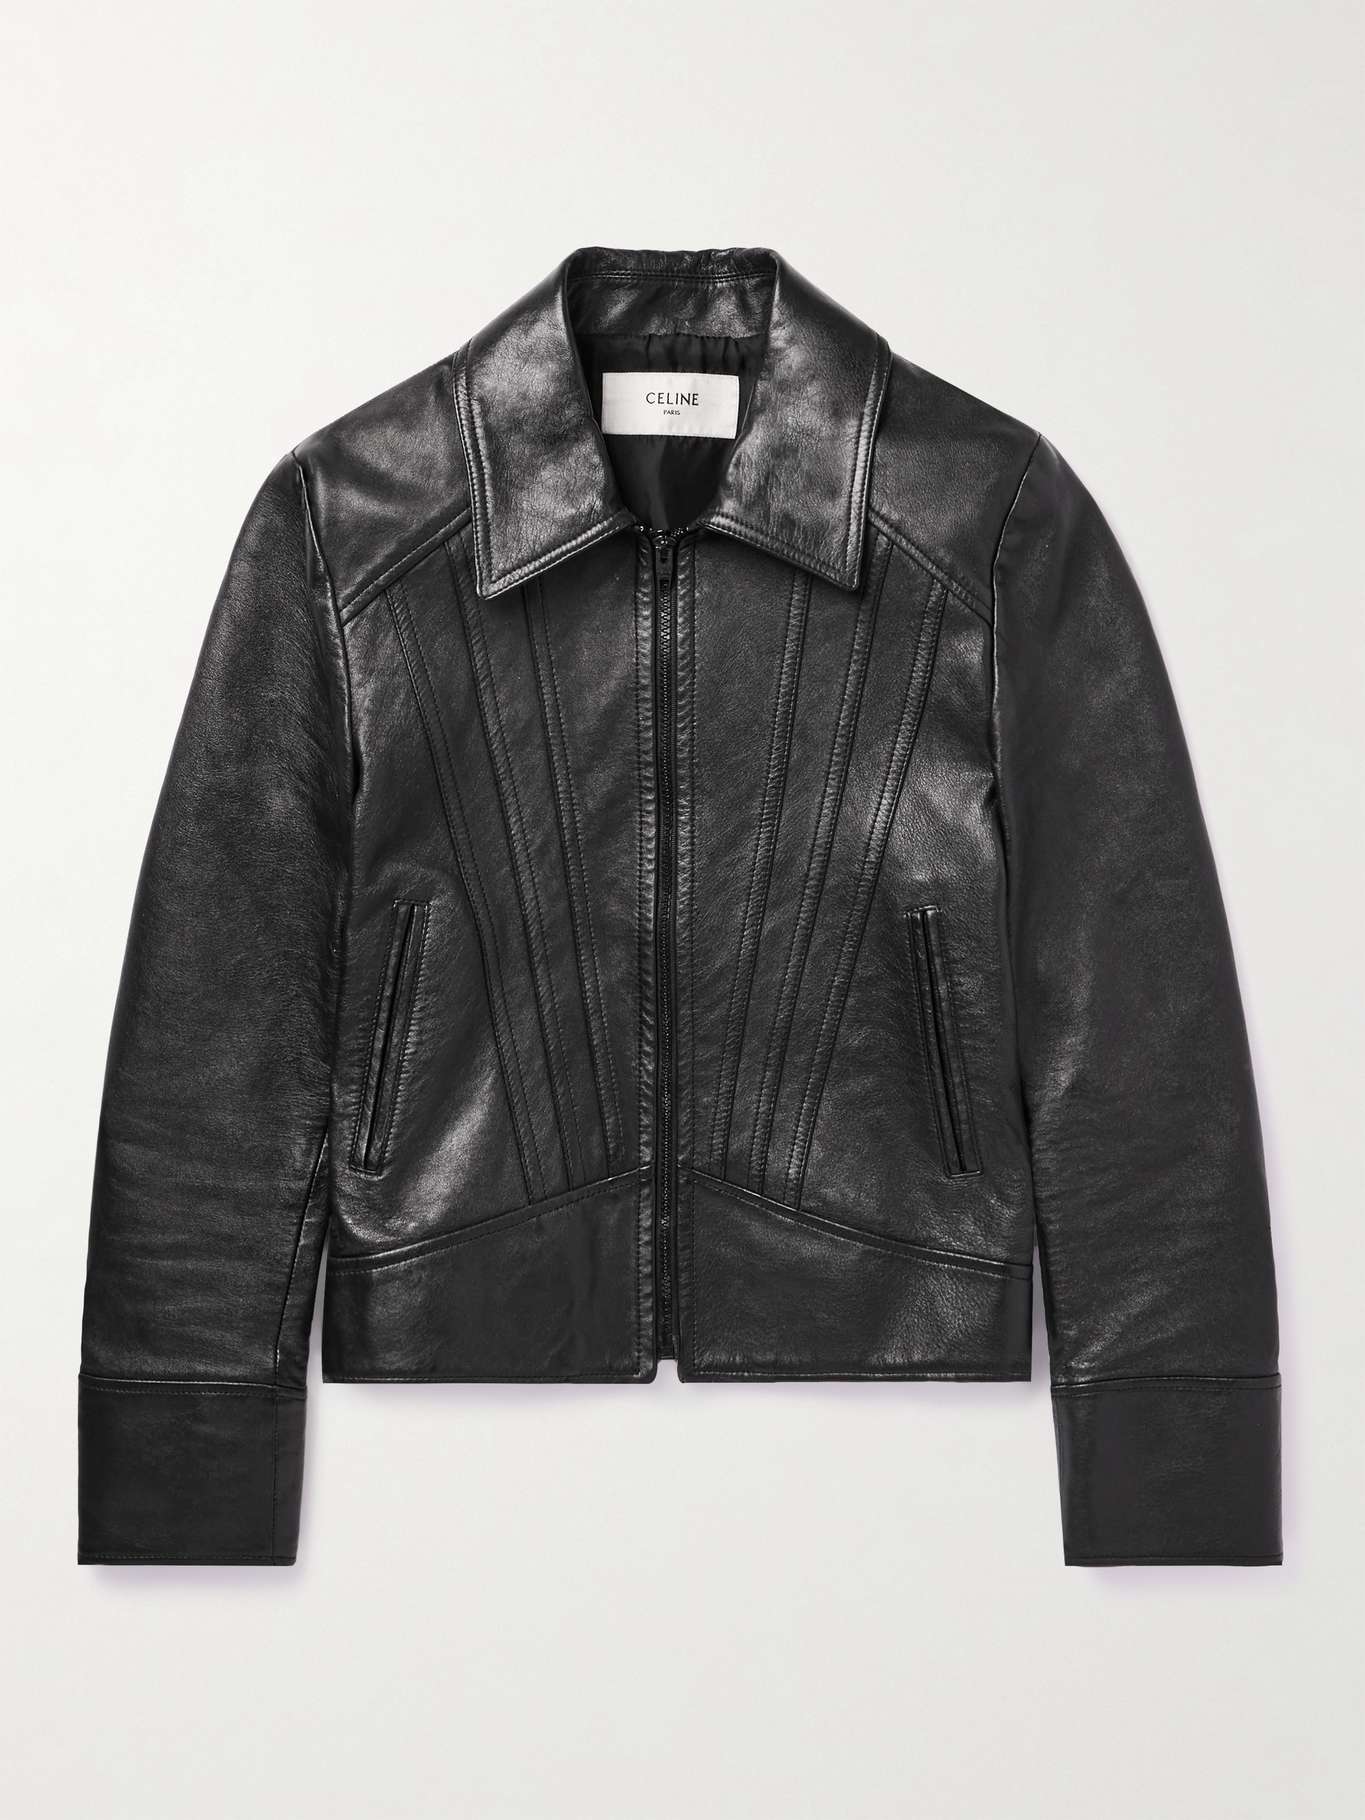 CELINE HOMME Slim-Fit Panelled Leather Jacket for Men | MR PORTER